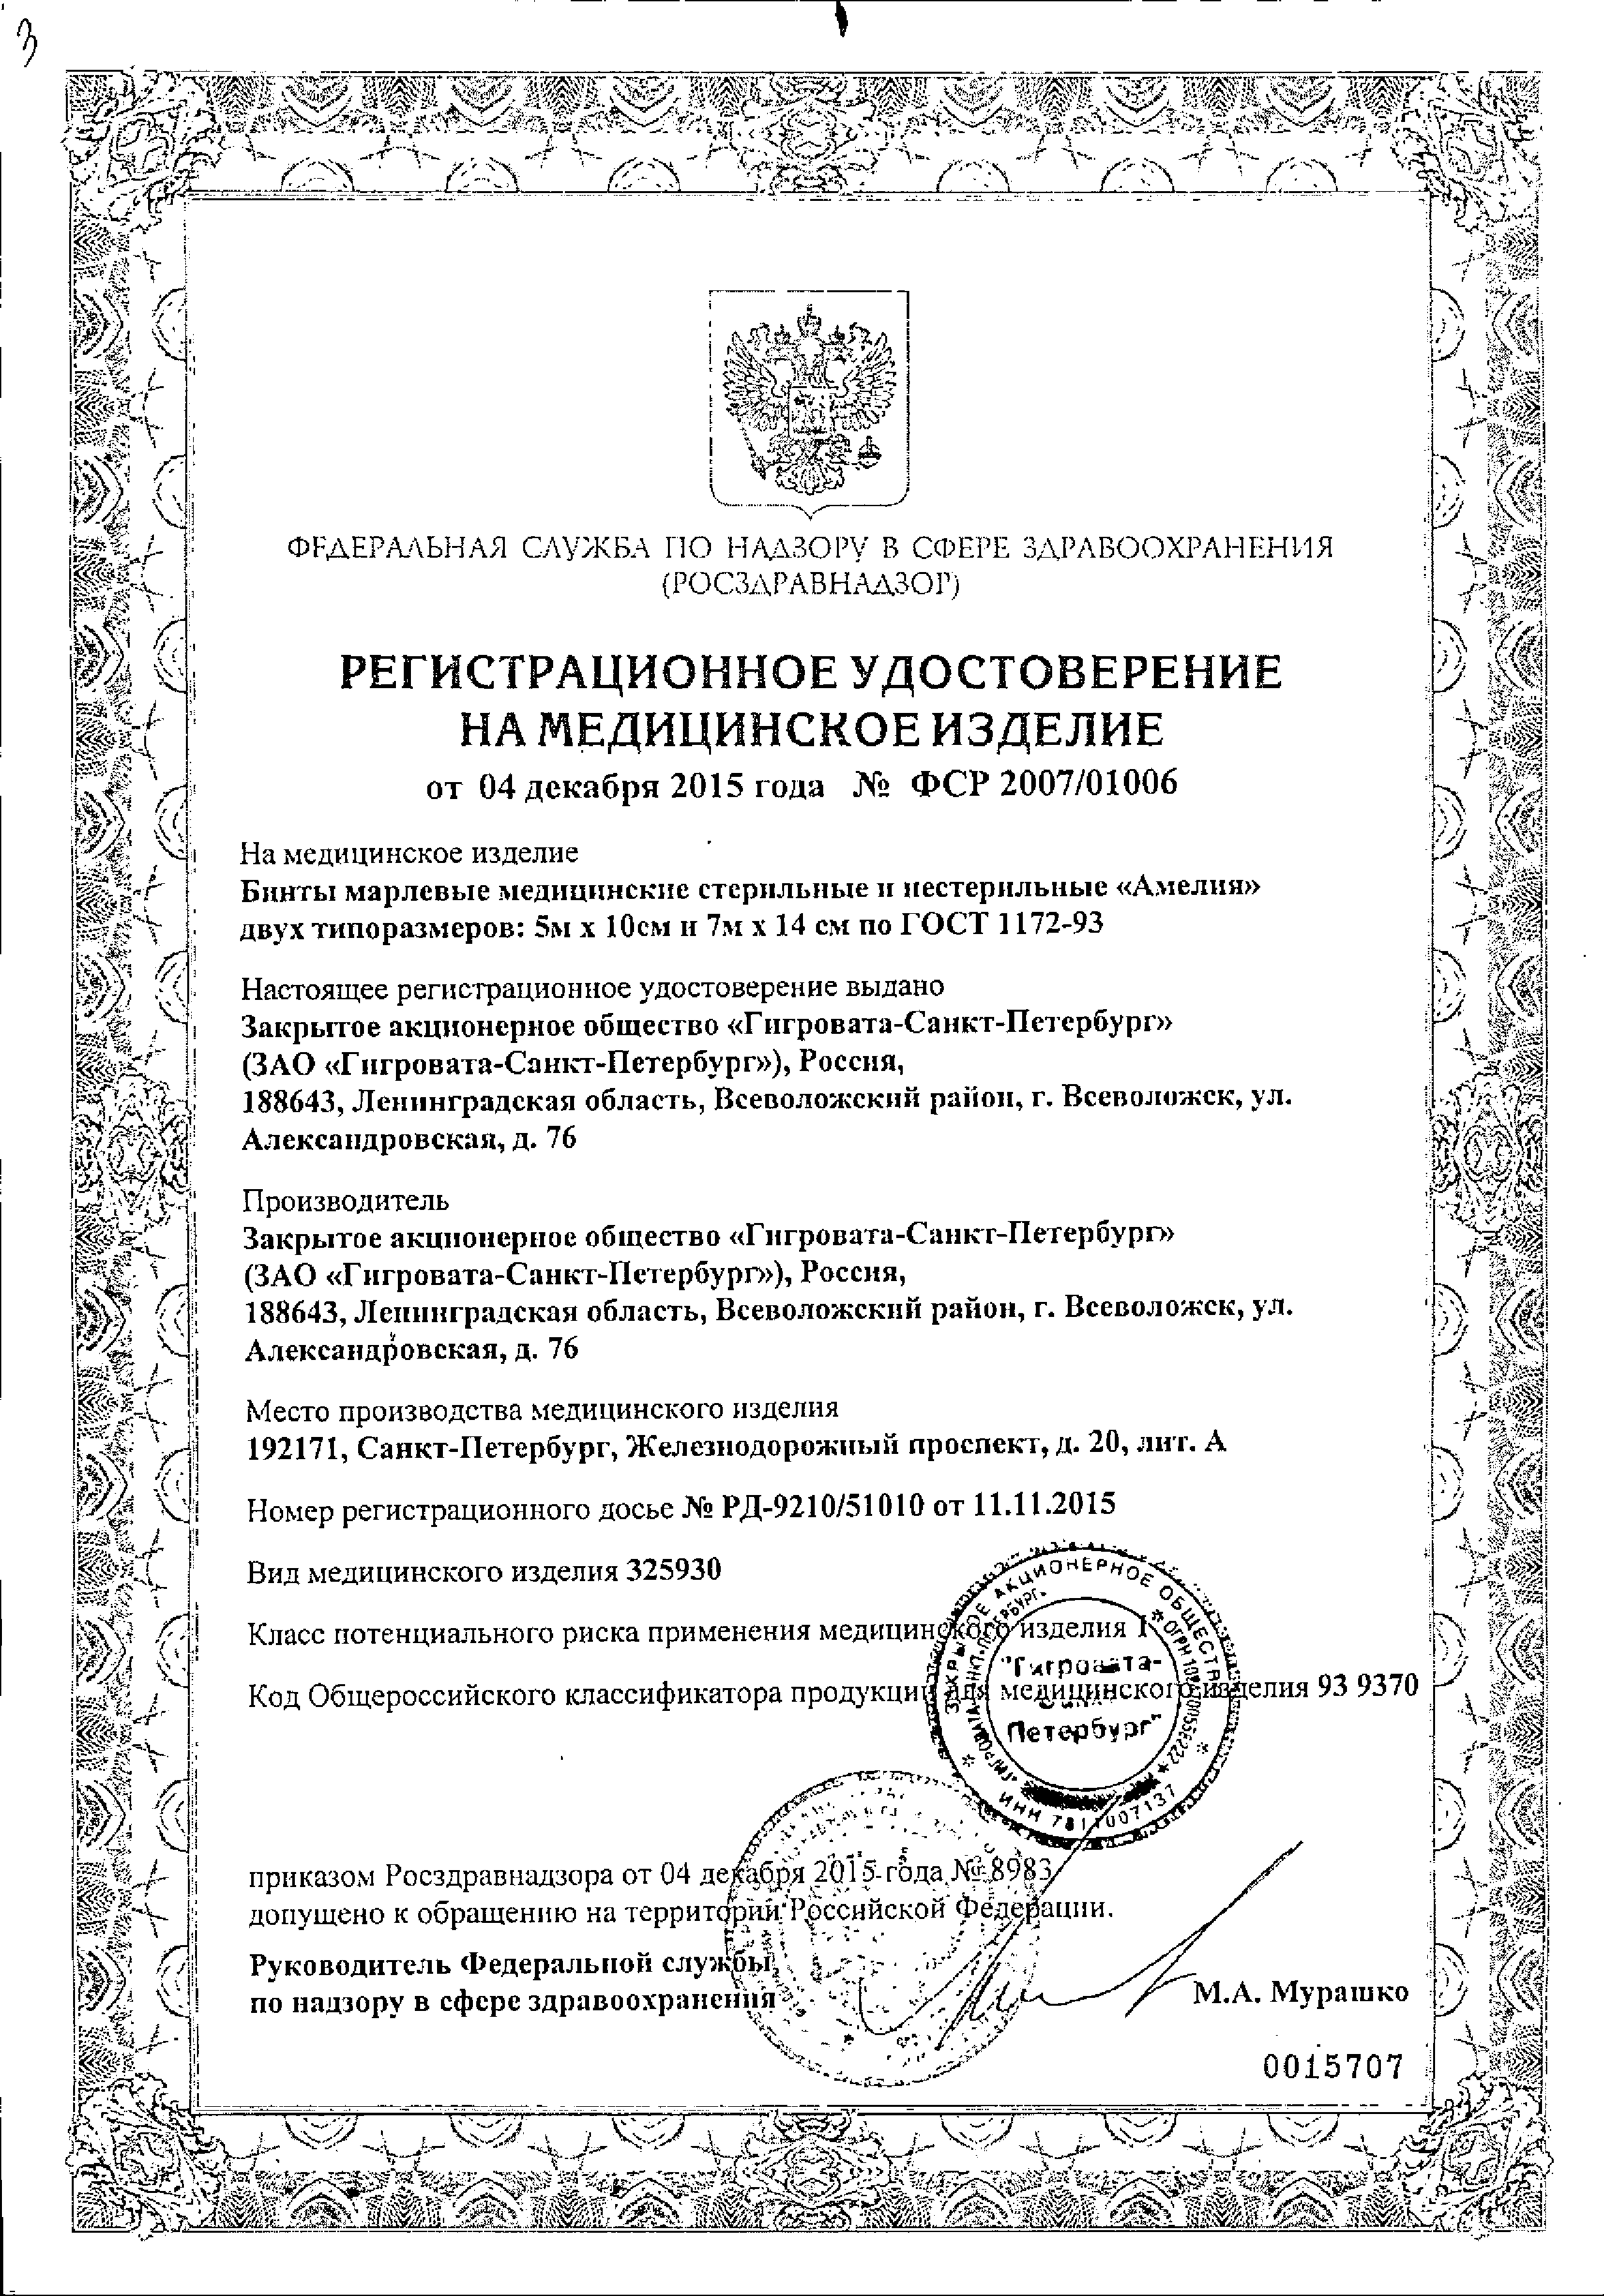 Бинт марлевый медицинский стерильный «Амелия» сертификат